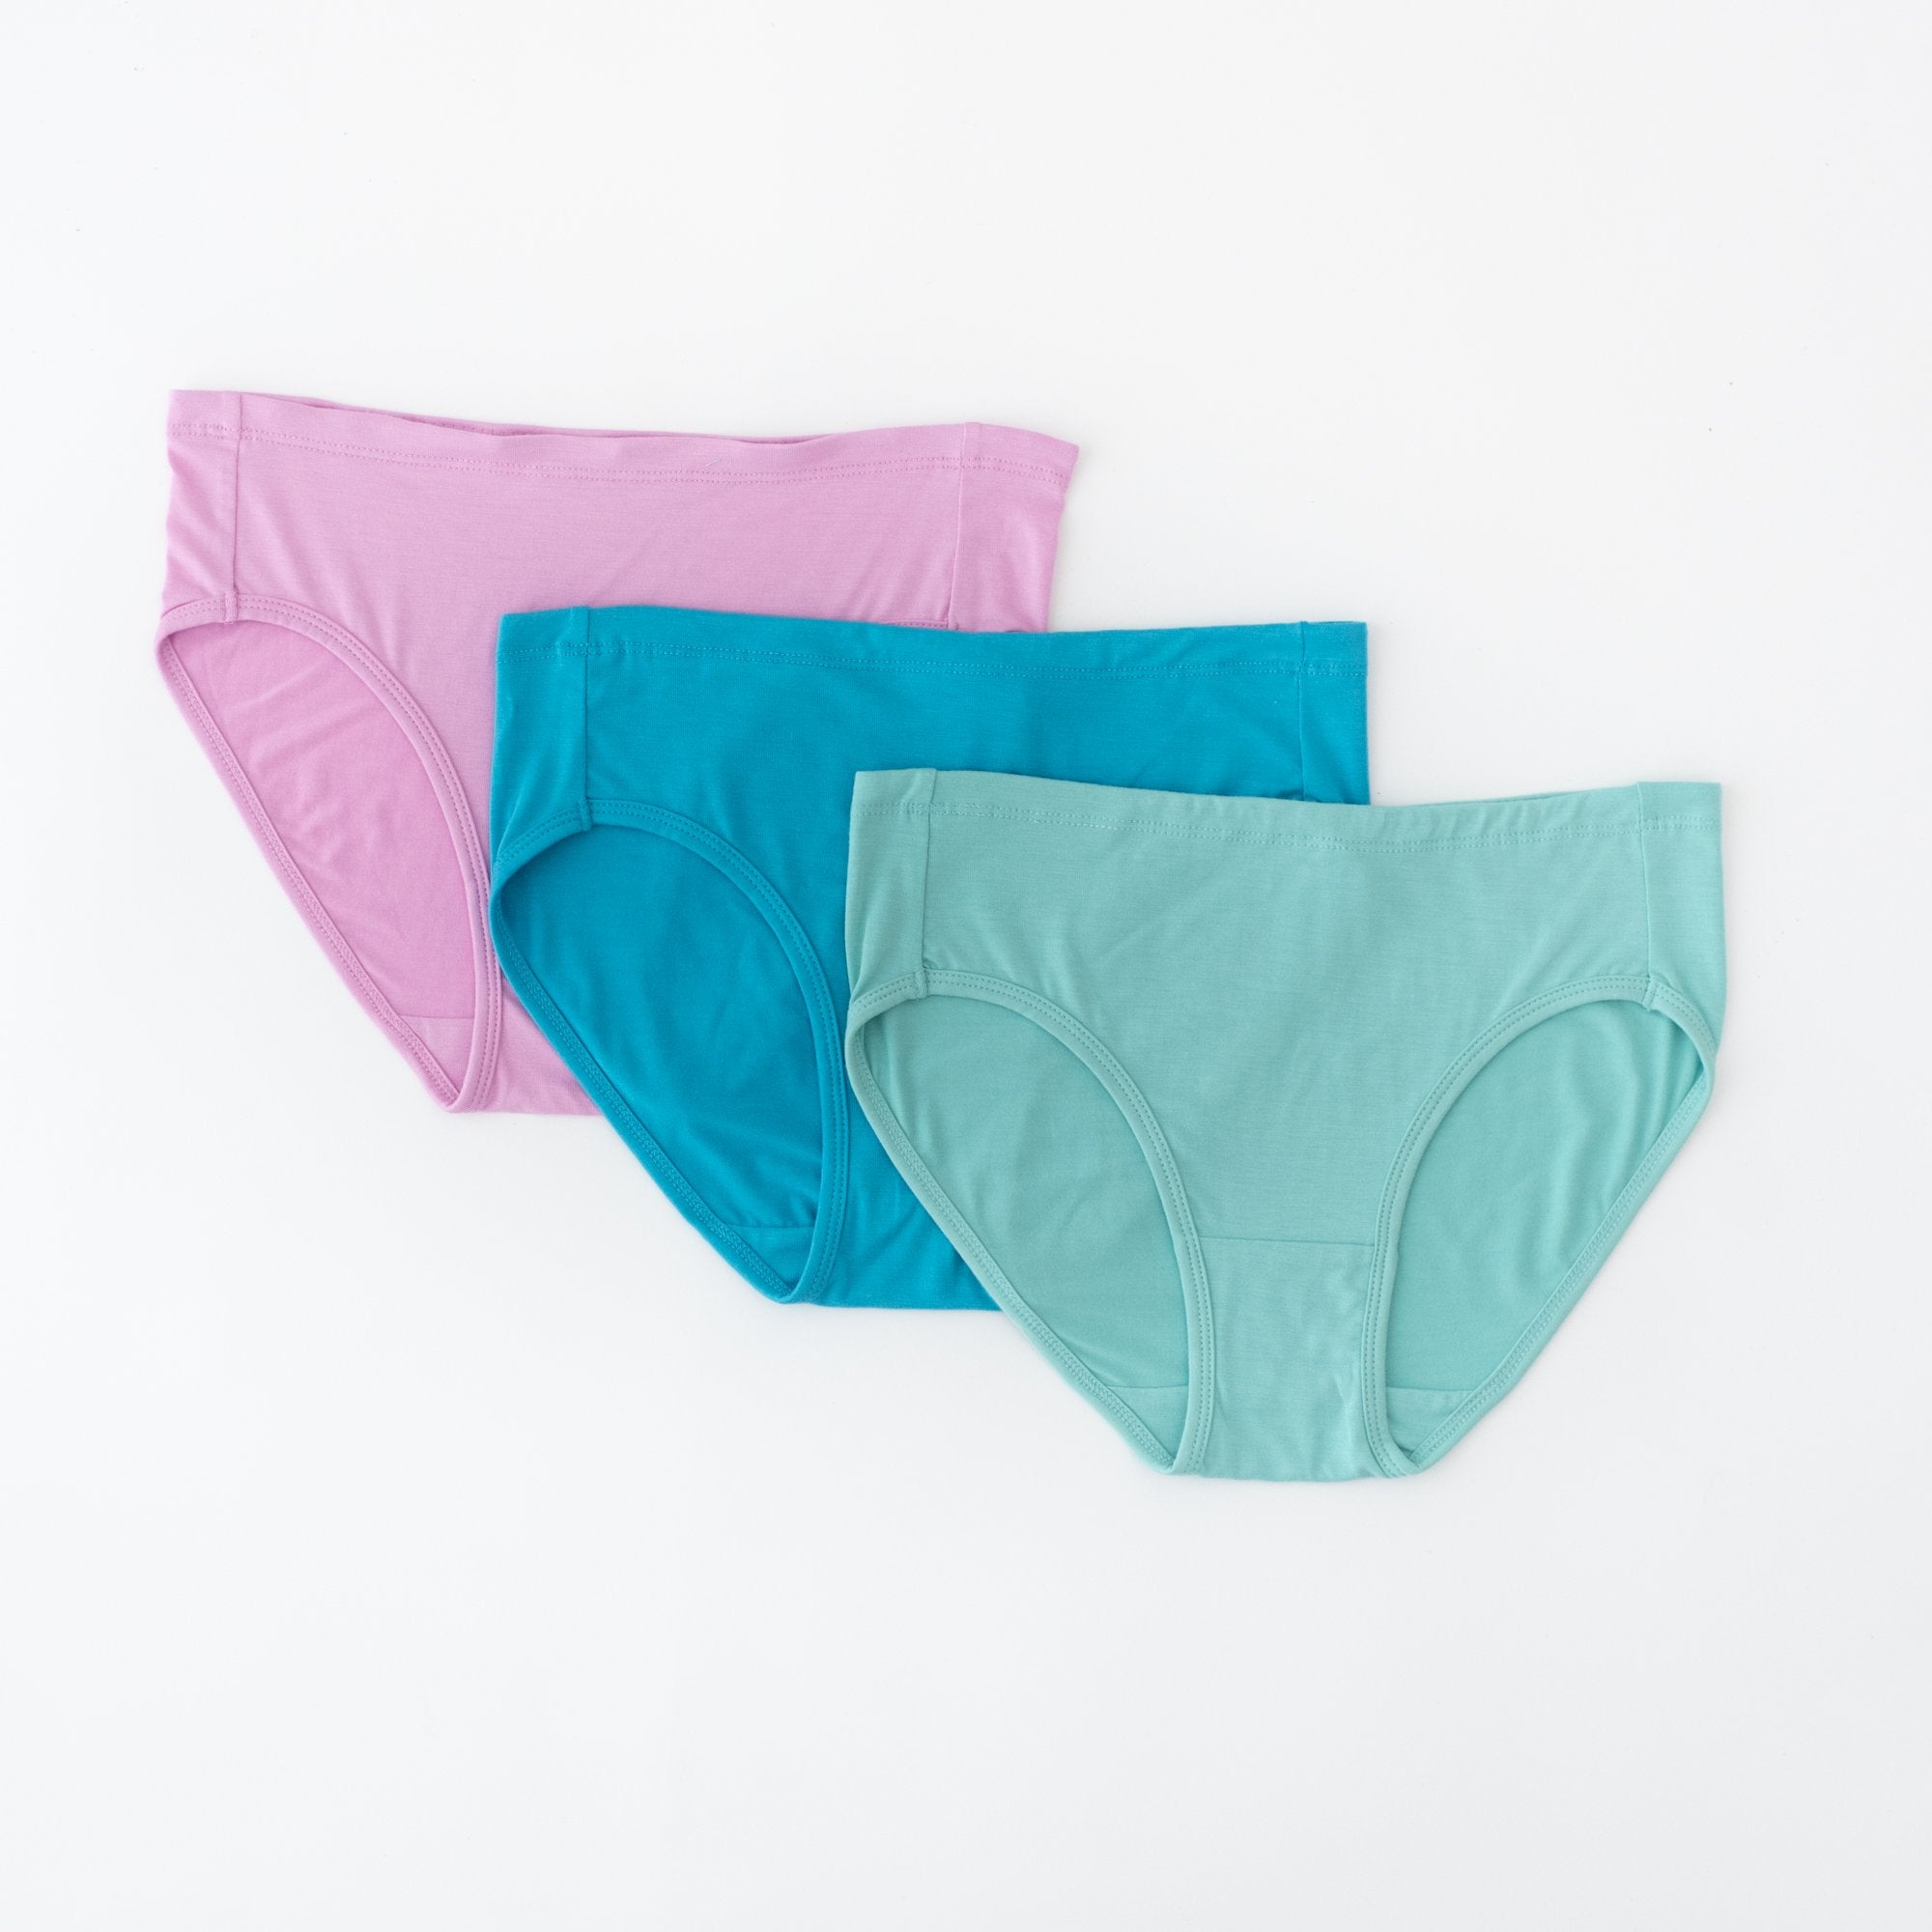 Bubblegum, Lagoon and Jade womens underwear